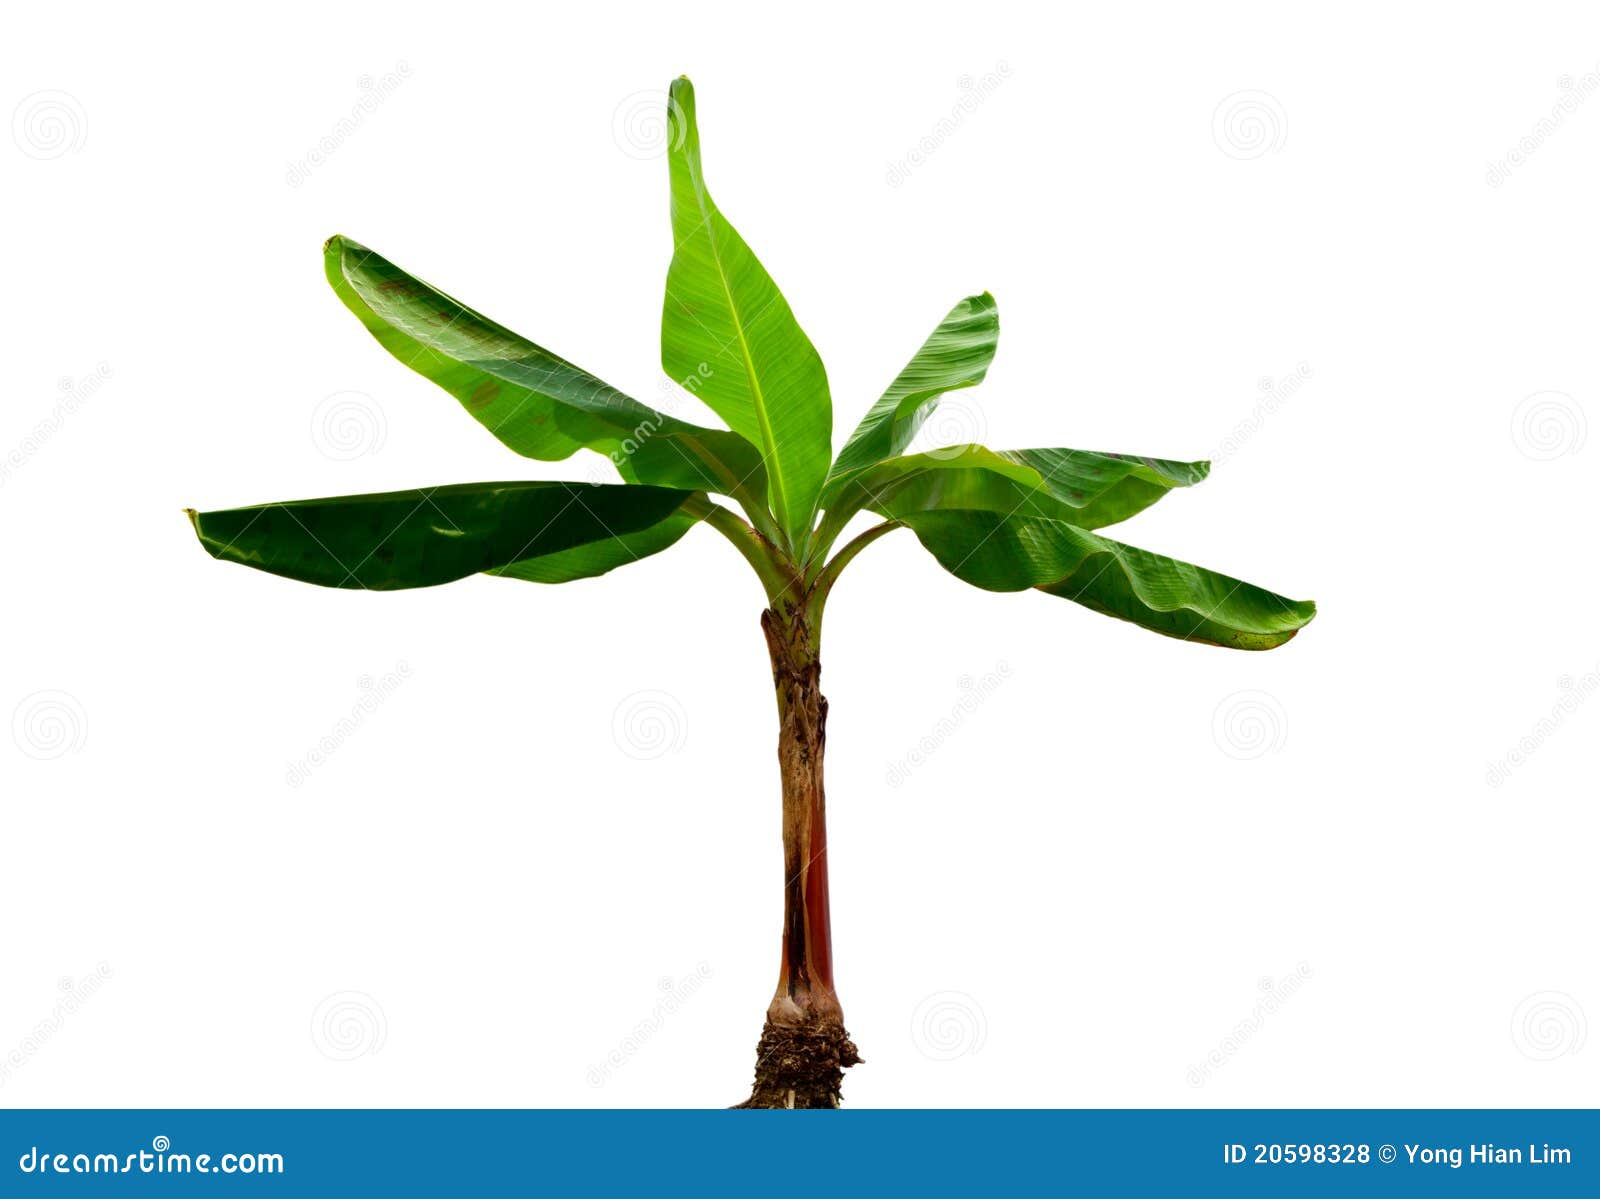 musa banana plant